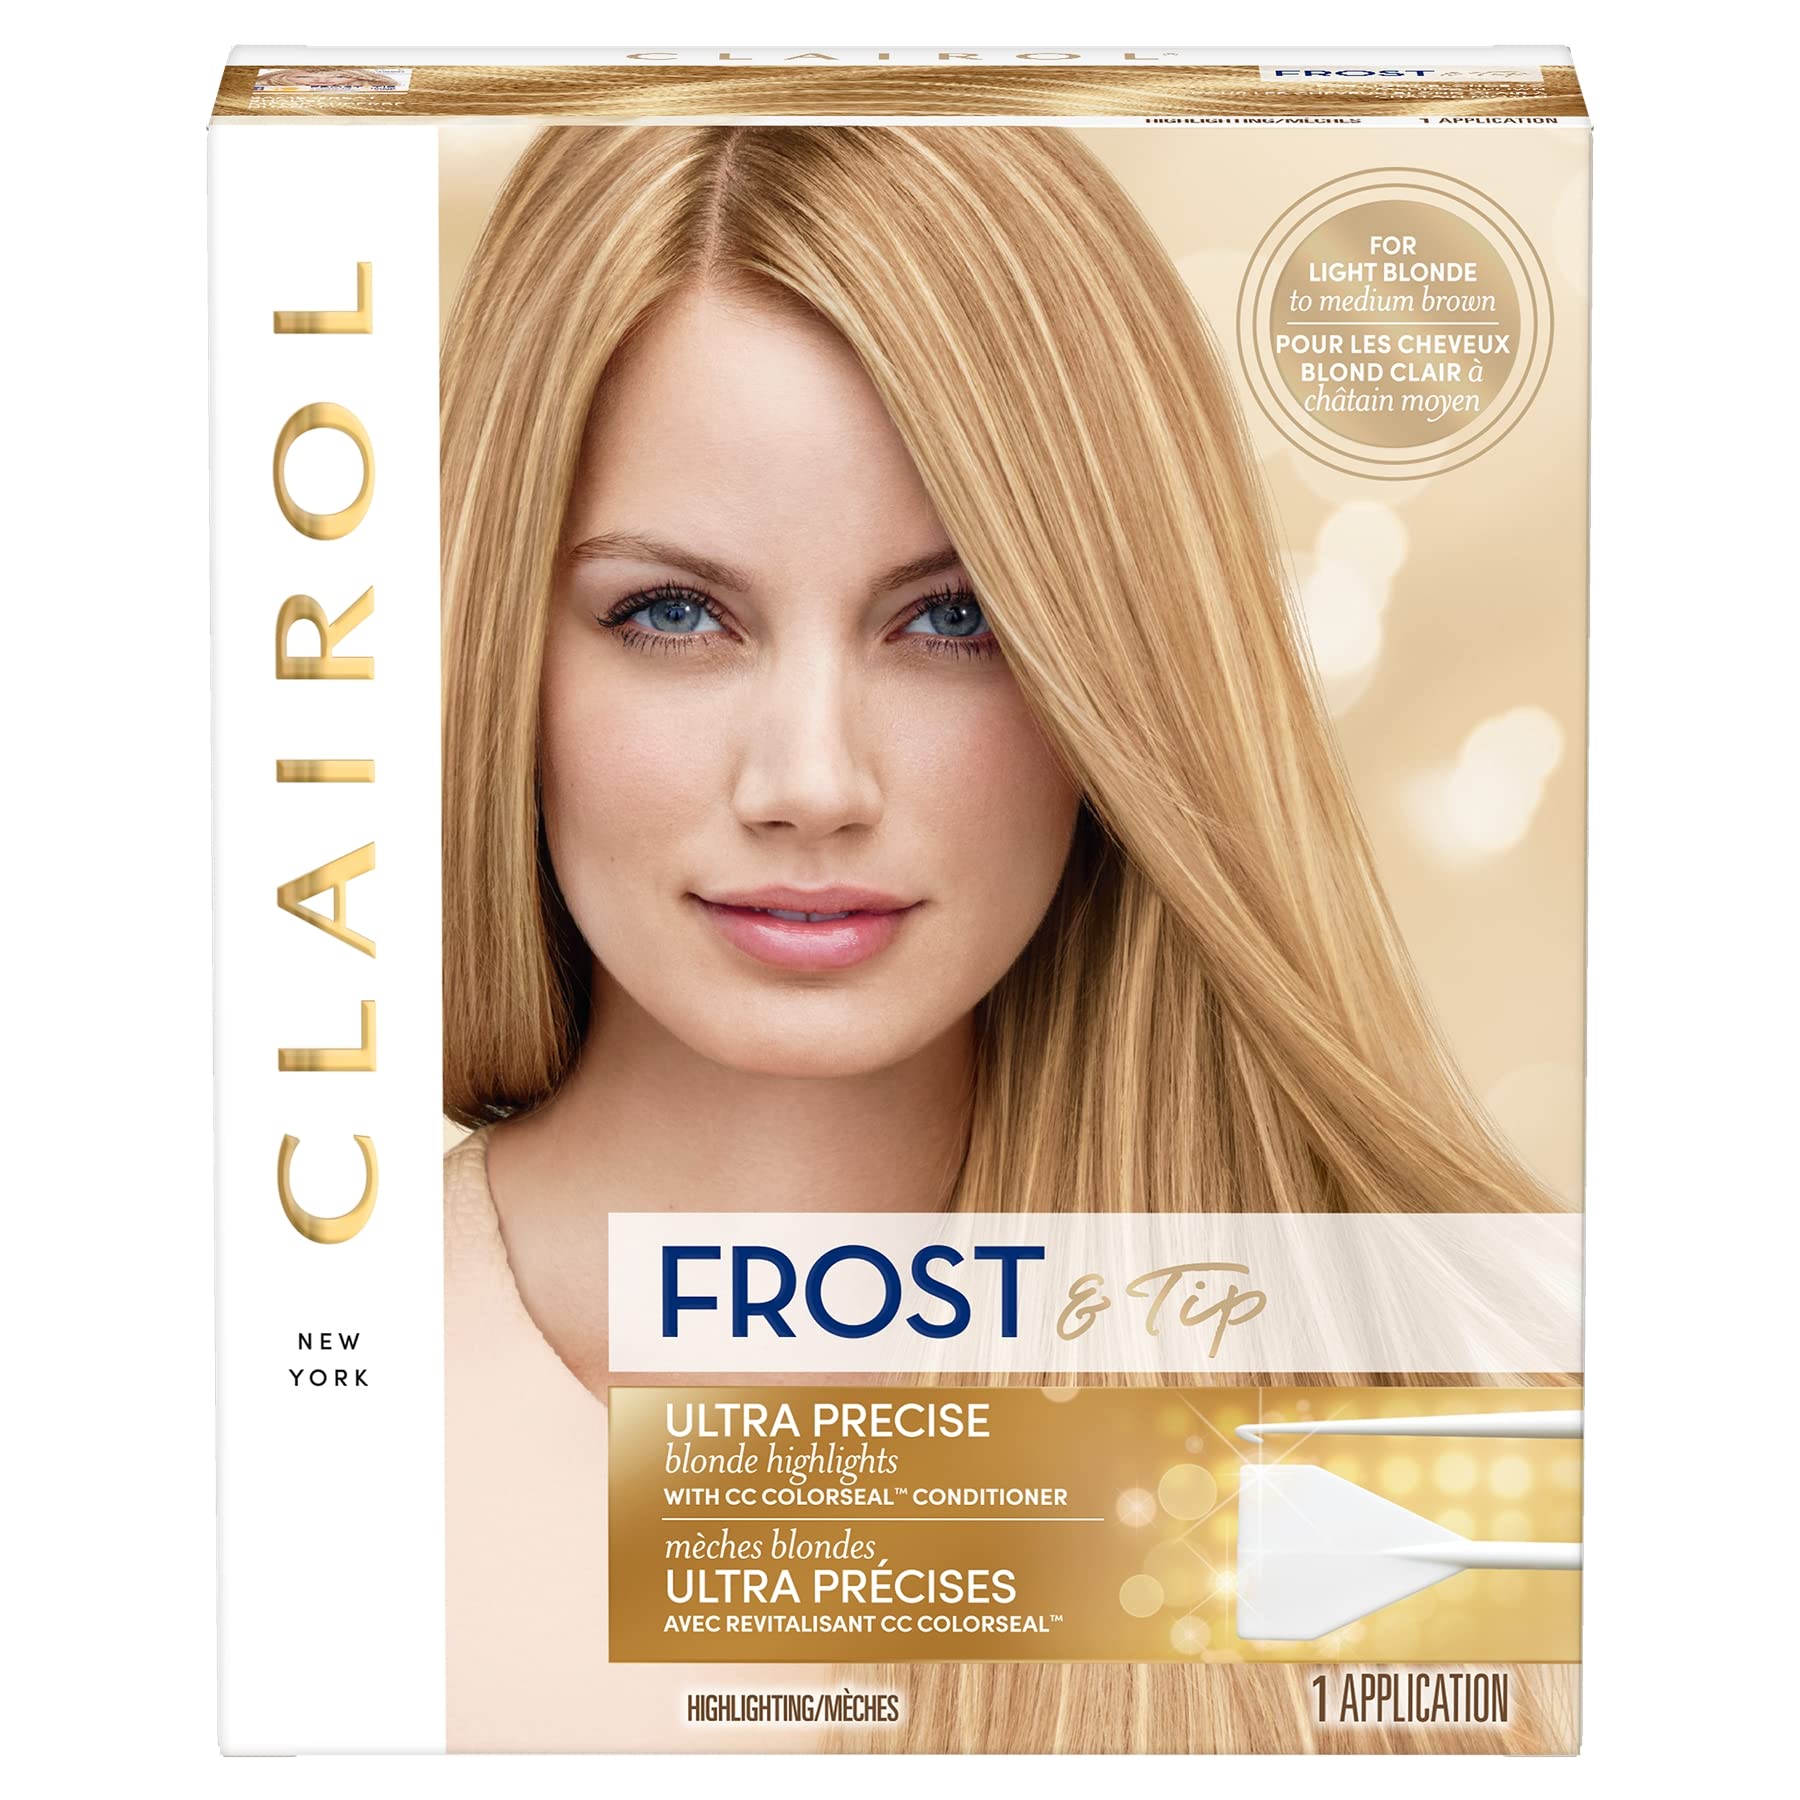 Clairol Nice'n Easy Frost & Tip Original Hair Dye, Light Blonde to Medium Brown Hair Color, Blonde Highlights, Pack of 1